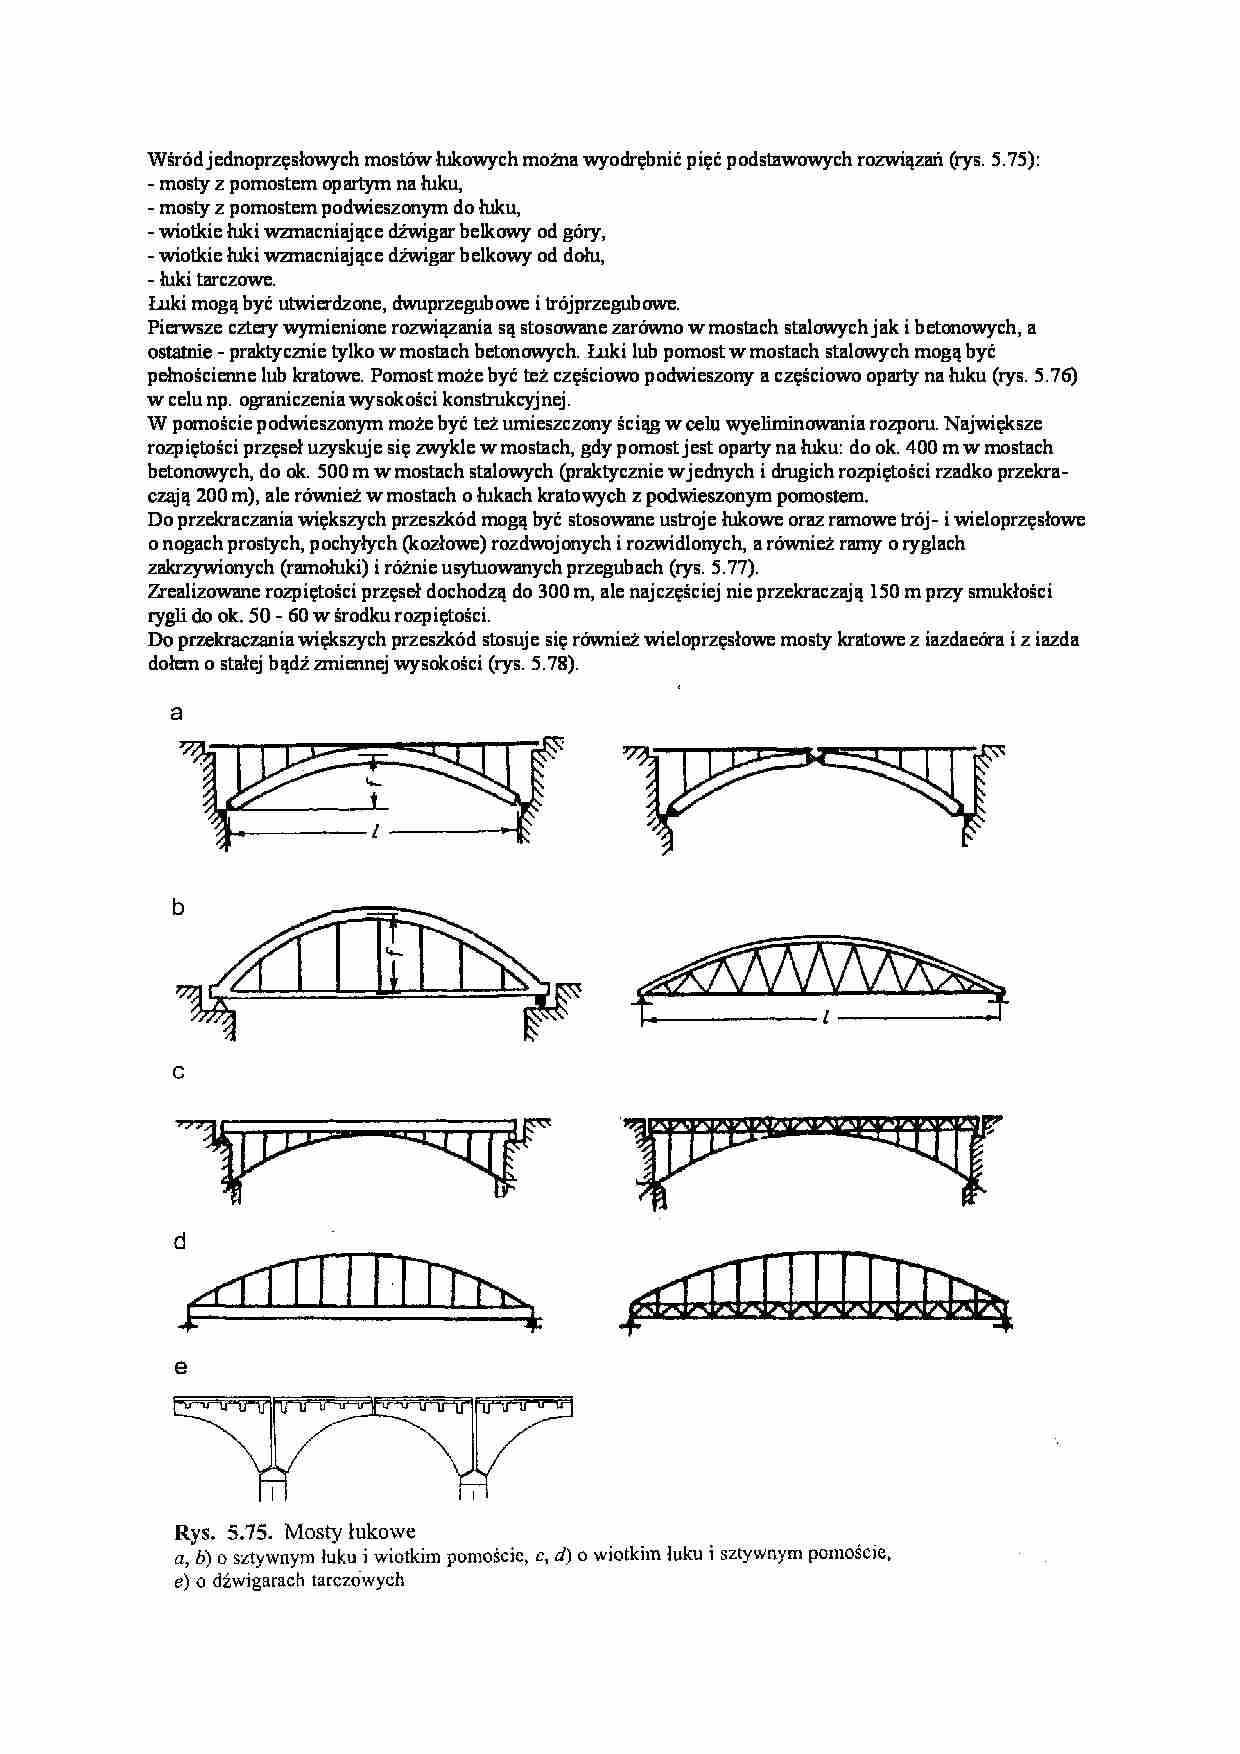 Jednoprzęsłowe mosty łukowe - wykład - strona 1